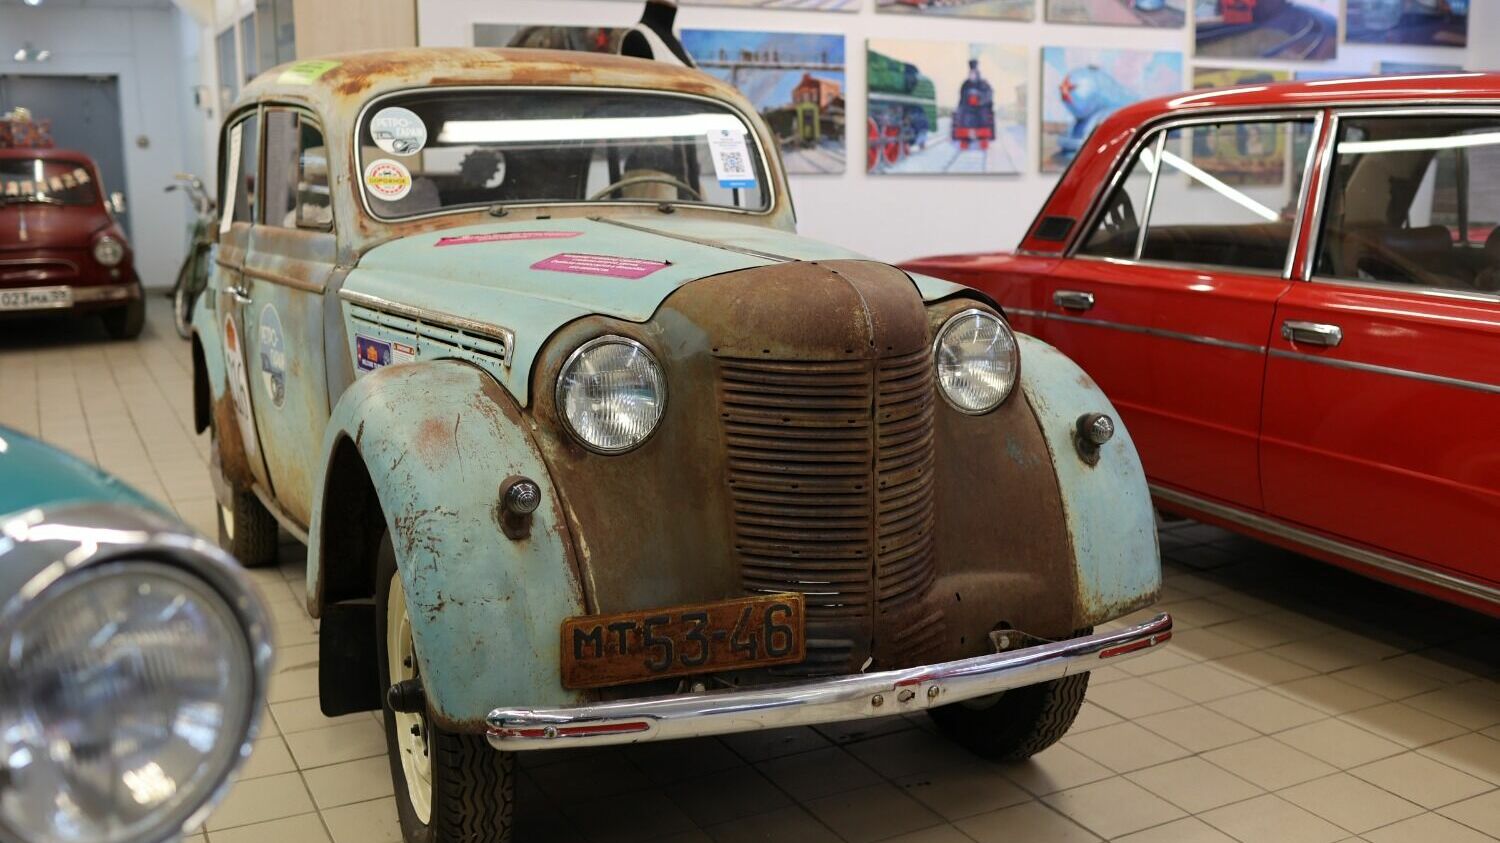 4 декабря 1946 года на Московском заводе малолитражных автомобилей (с 1968 года — Автомобильный завод им. Ленинского комсомола, АЗЛК) был собран первый легковой автомобиль «Москвич-400».